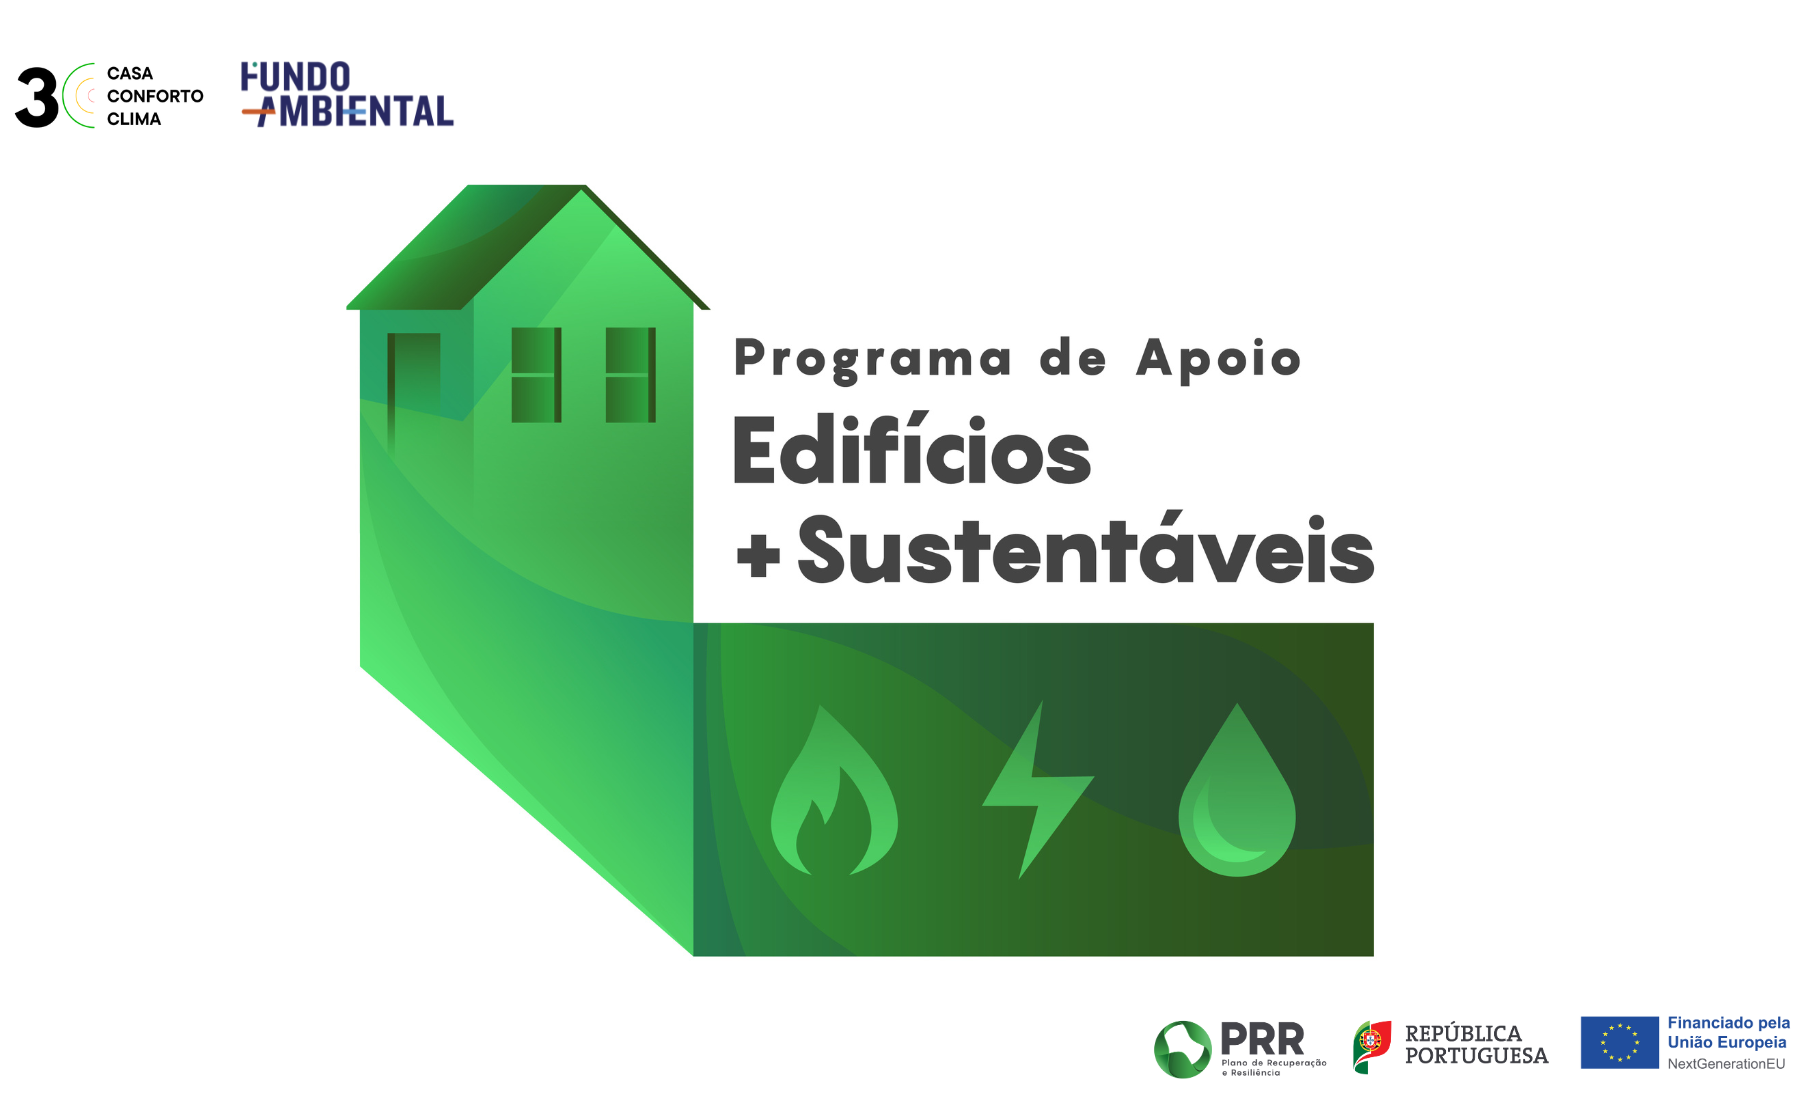 Nova abertura FUNDO AMBIENTAL - Programa de Apoio ao edificios + Sustentáveis.